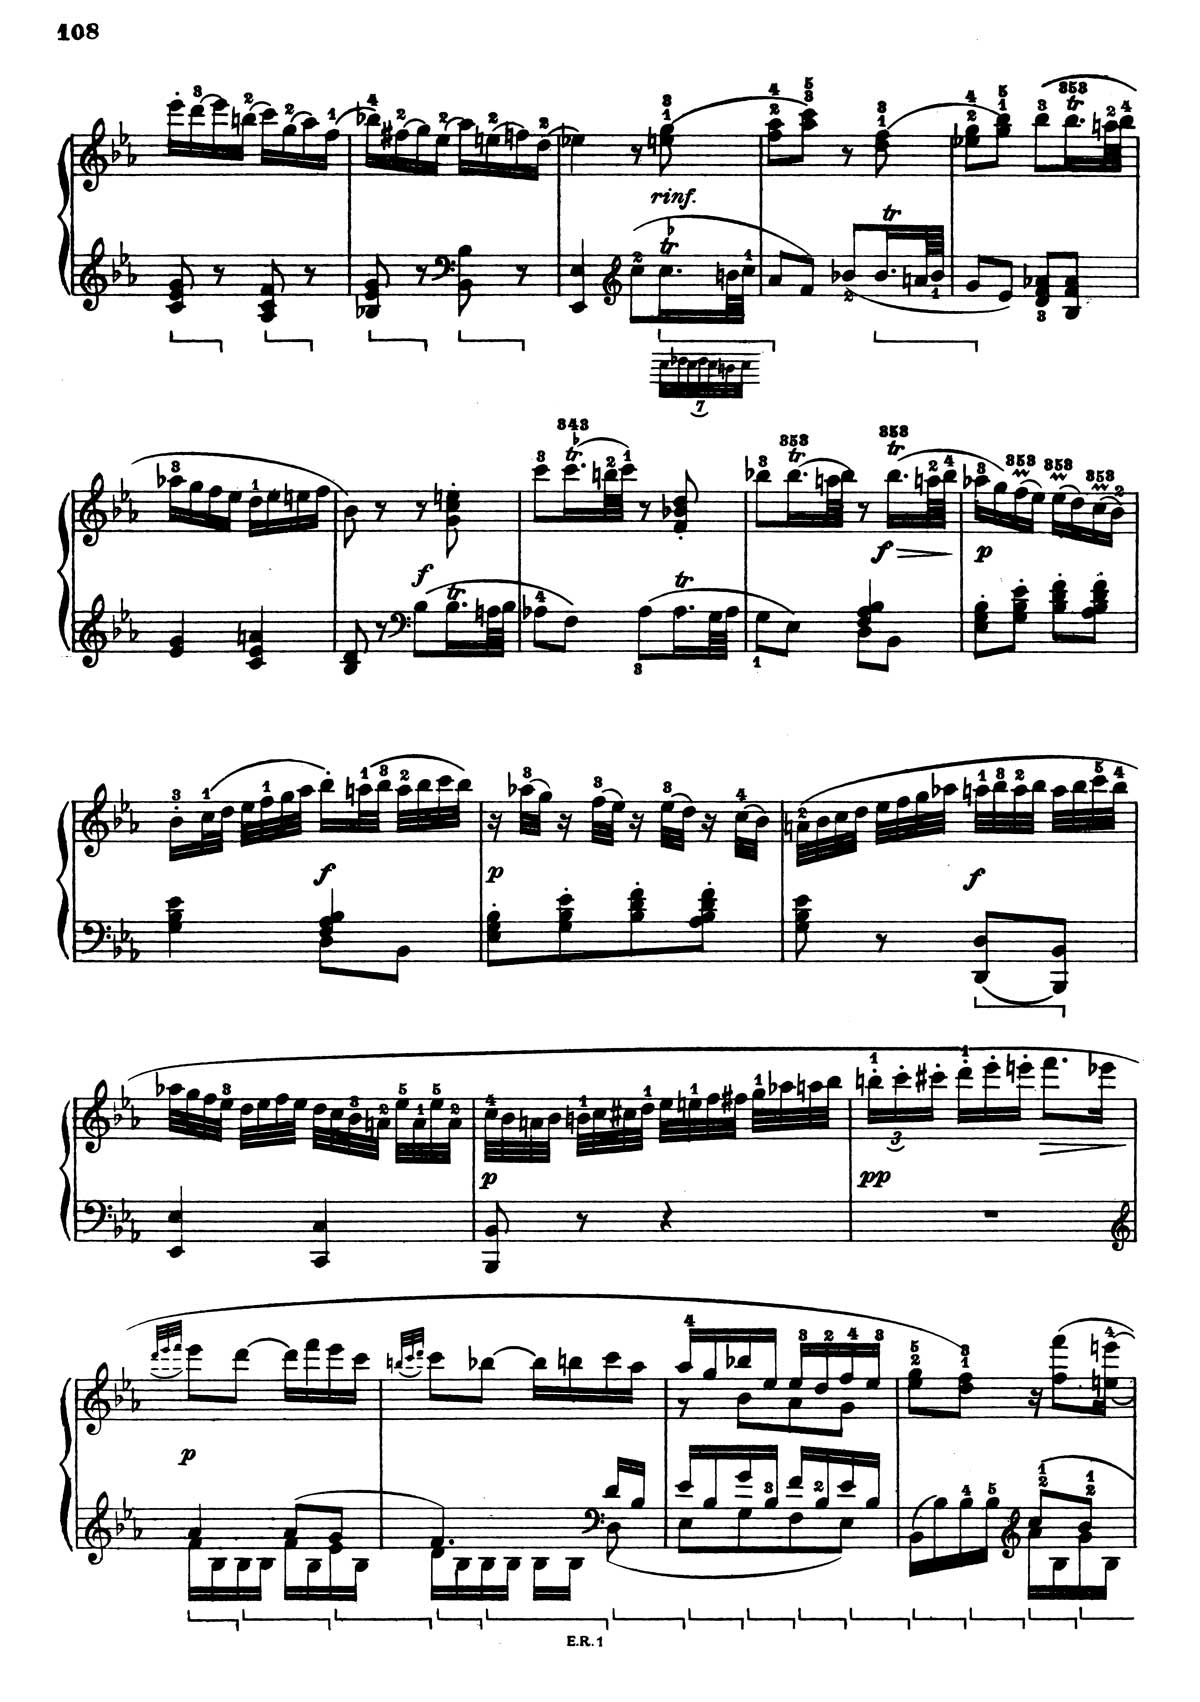 Beethoven Piano Sonata 4-30 sheet music